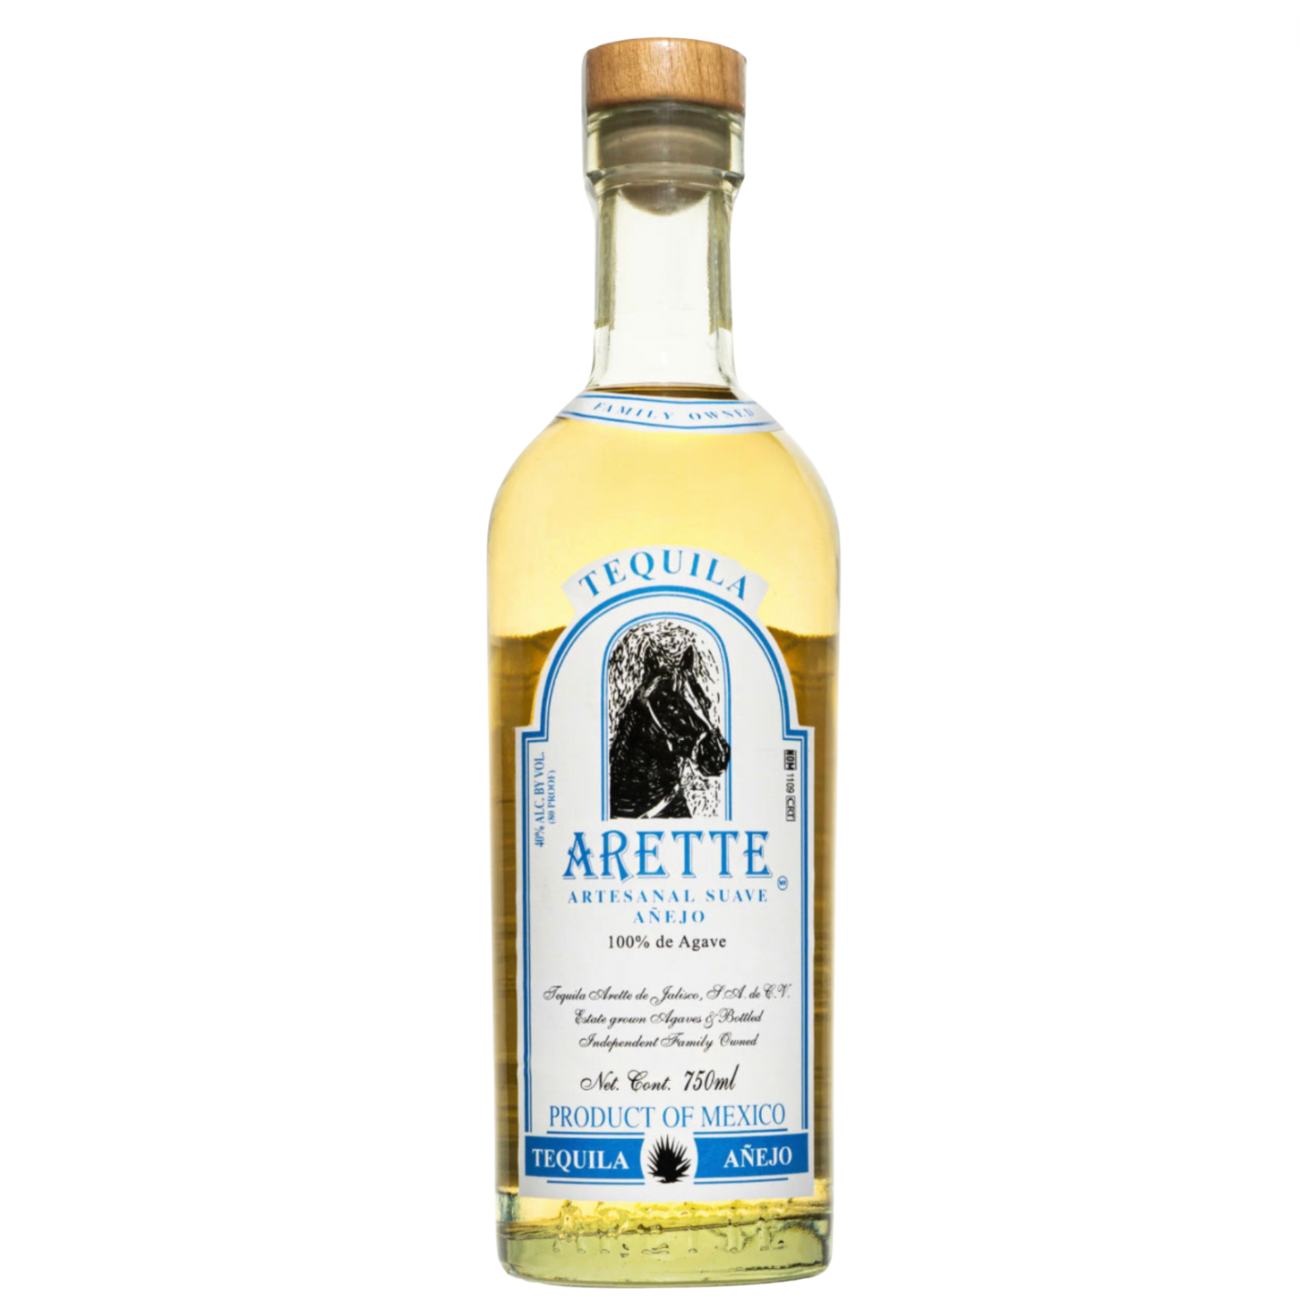 Arette Artesanal Añejo 750ml | Tequila